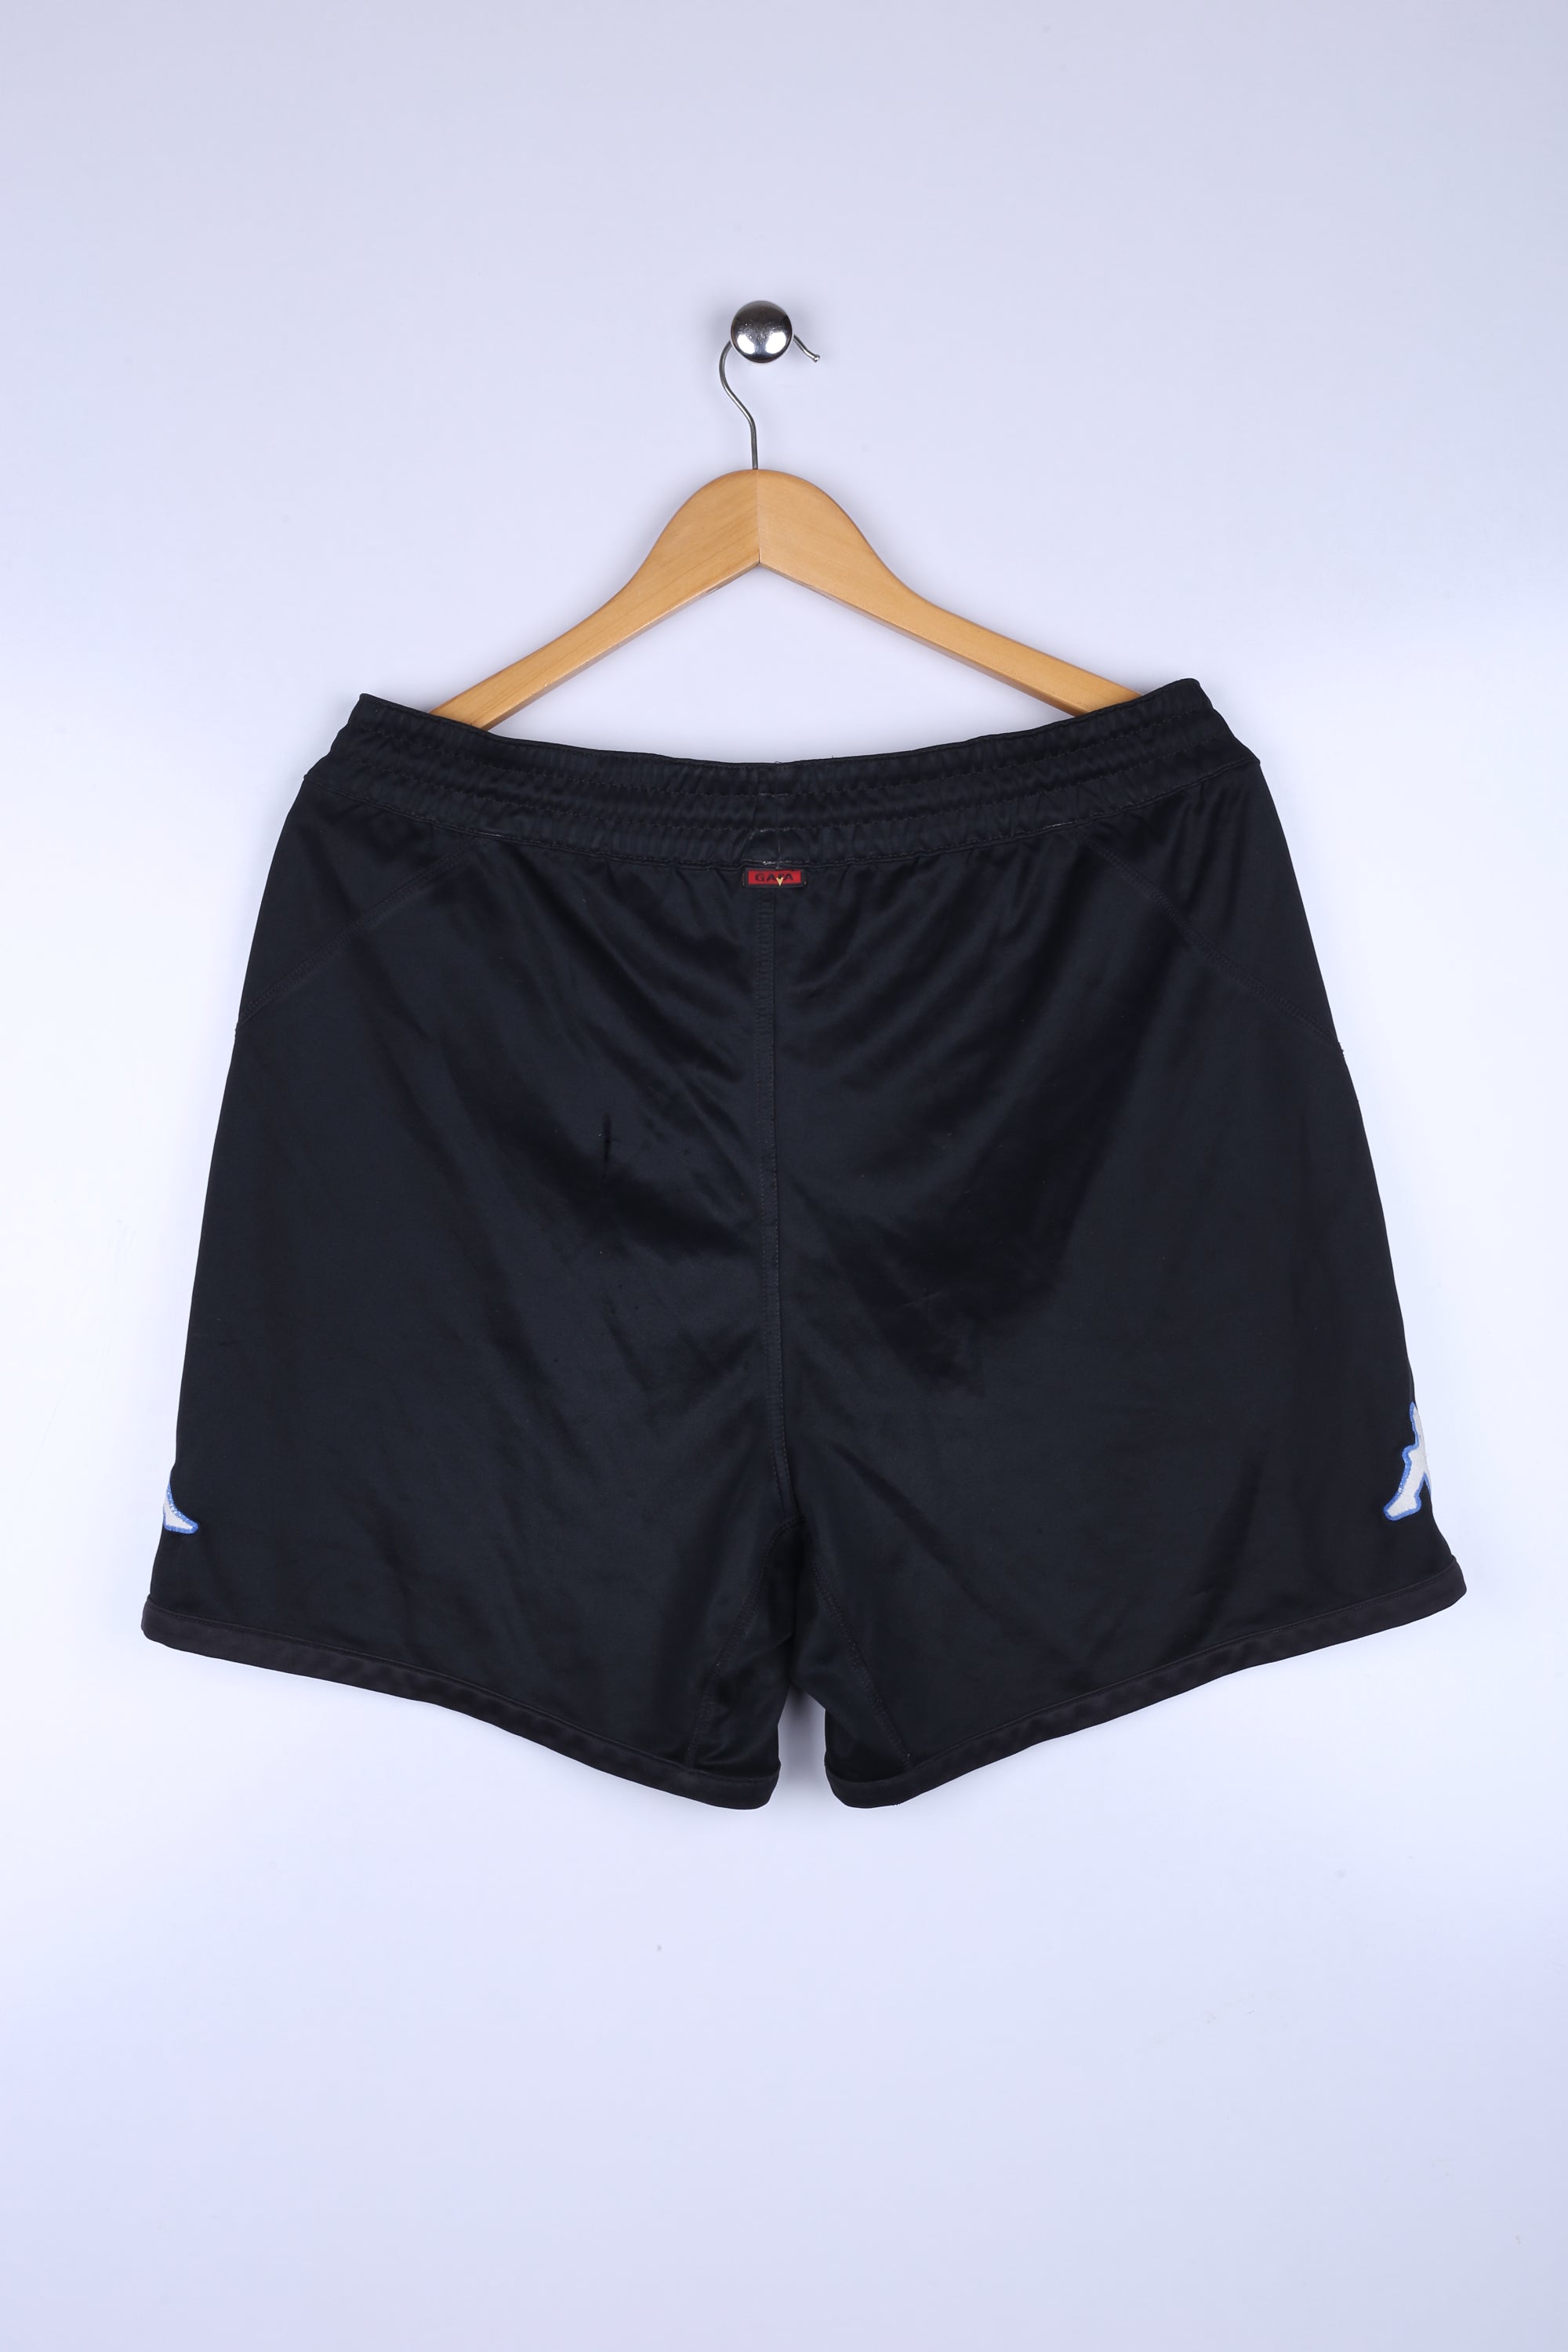 Vintage FC Kopenhagen Shorts Black